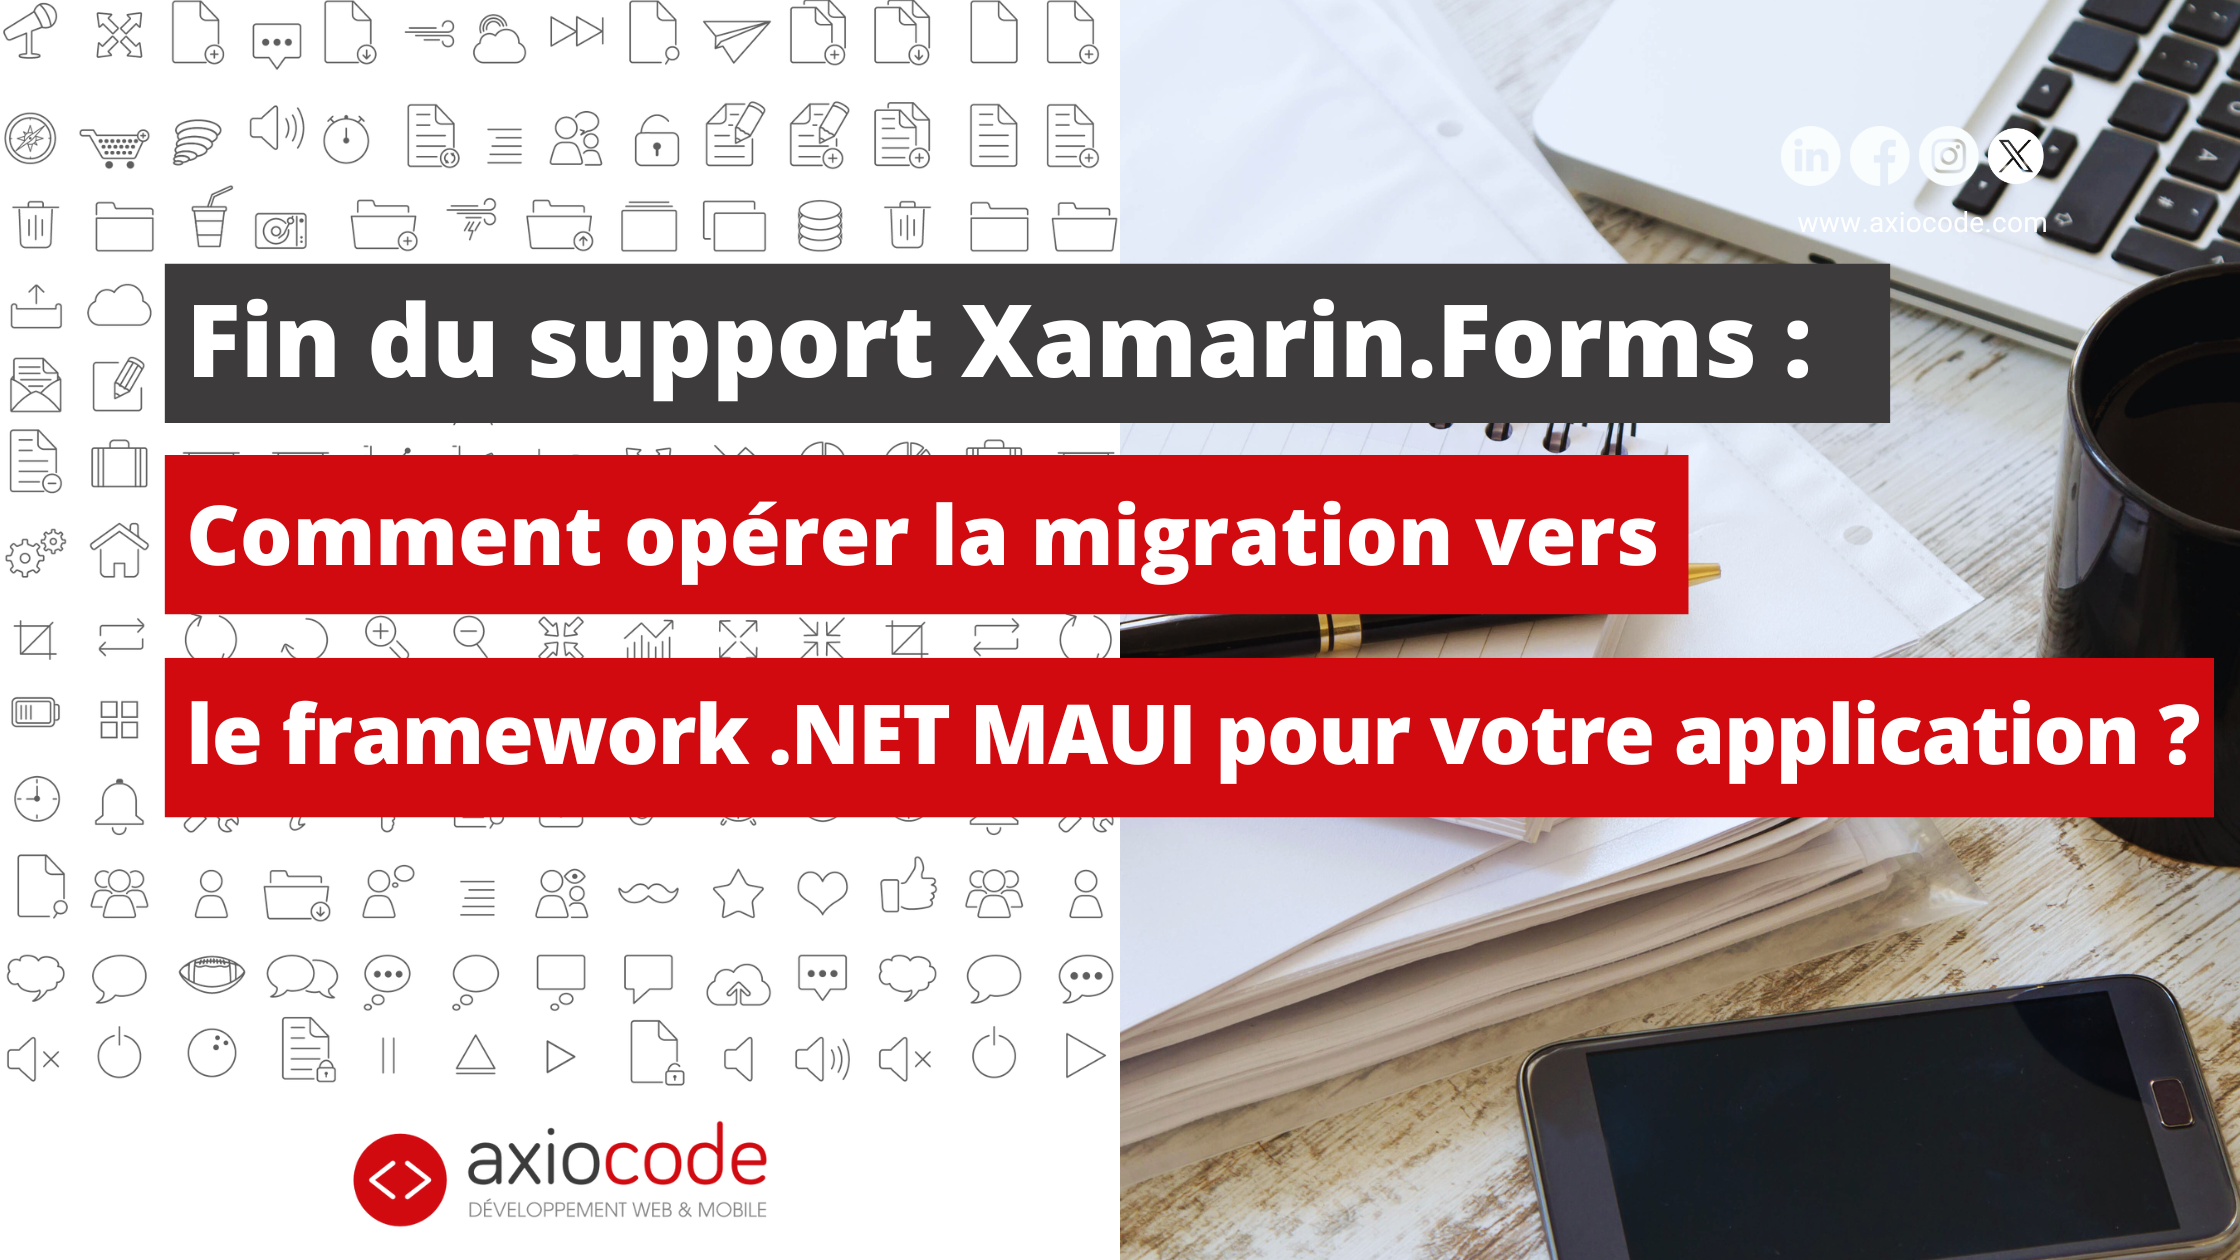 Fin du support Xamarin.Forms : Comment opérer la migration vers le framework .NET MAUI pour votre application ?